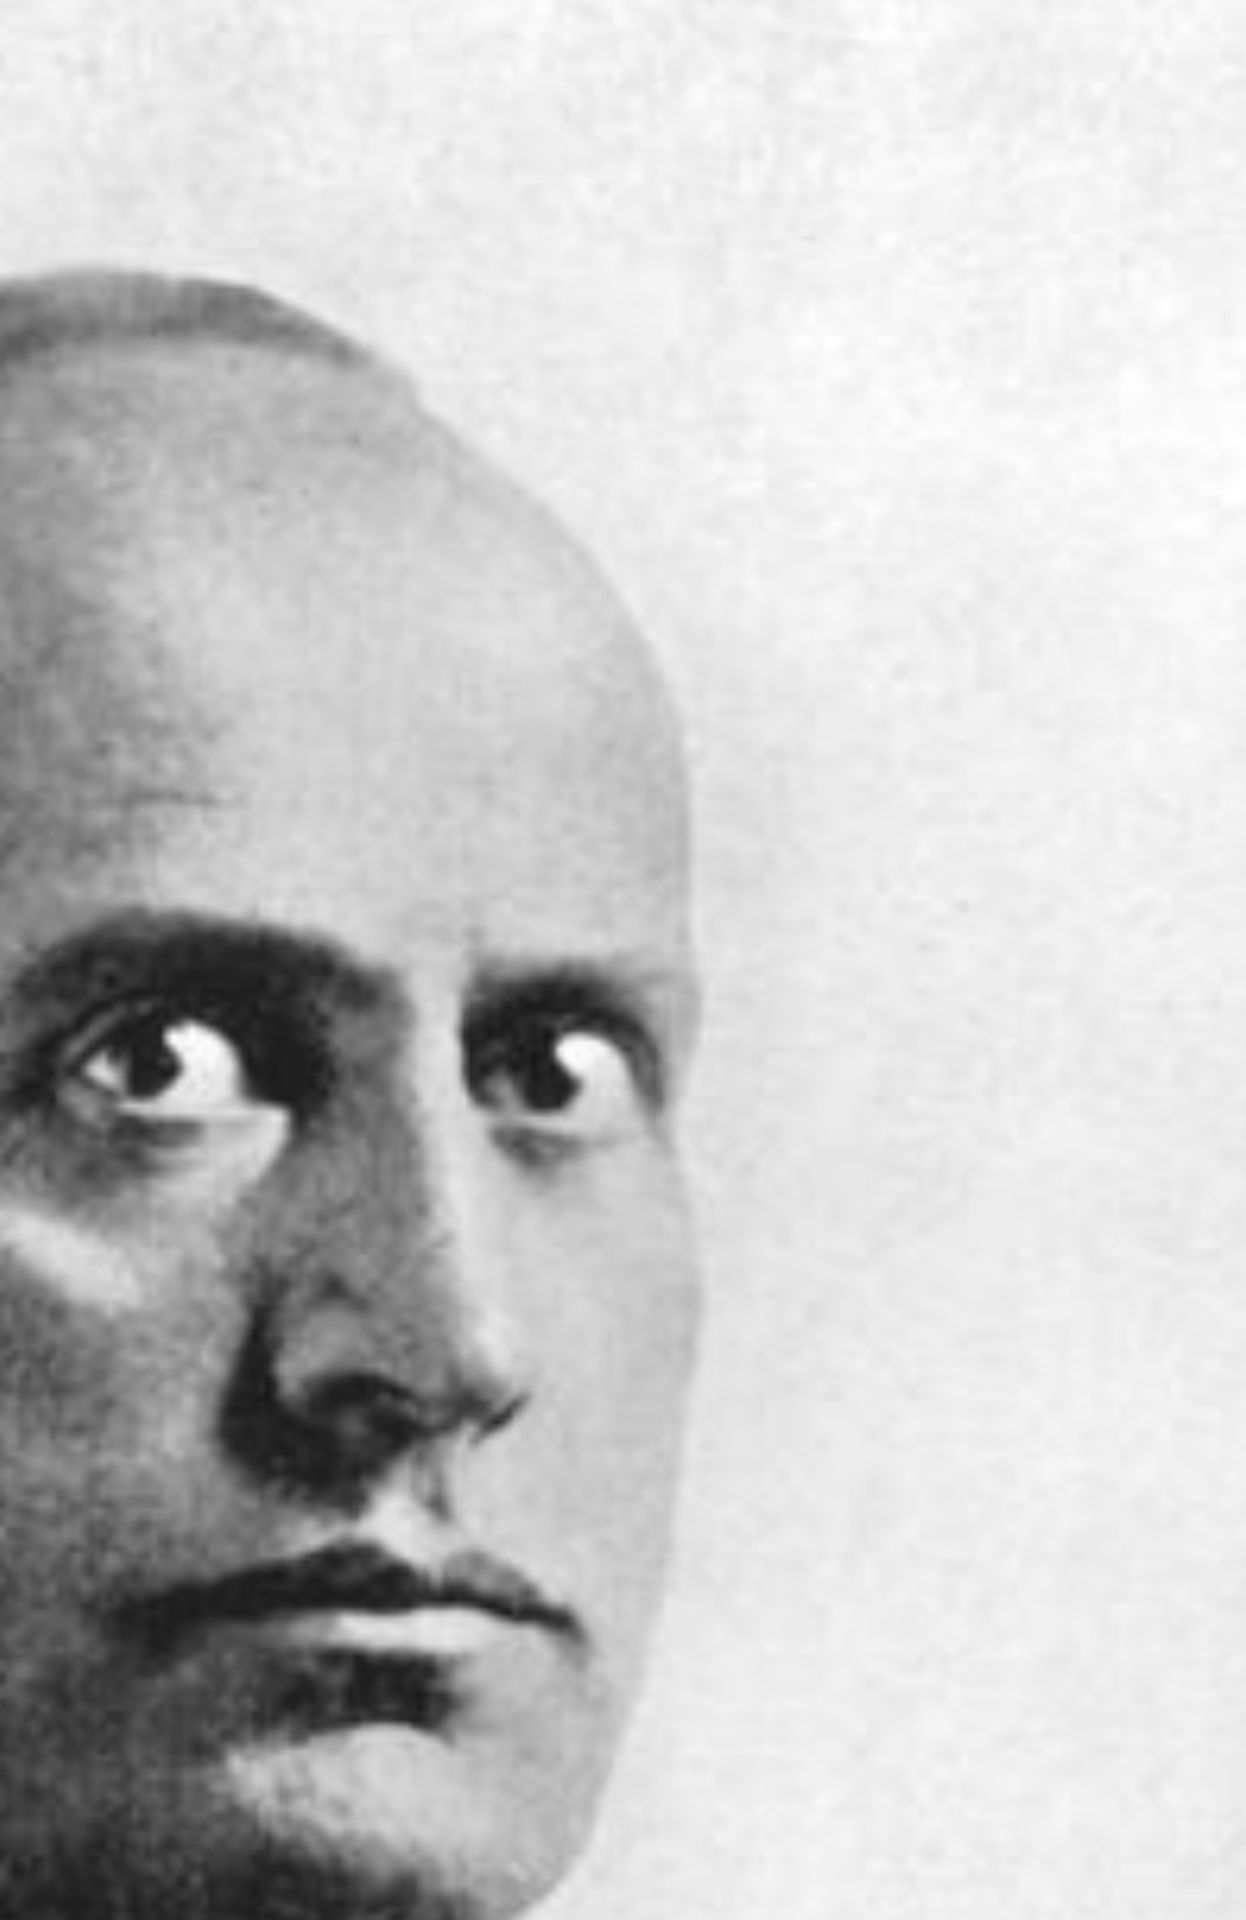 Benito Mussolini Print - Image 5 of 5